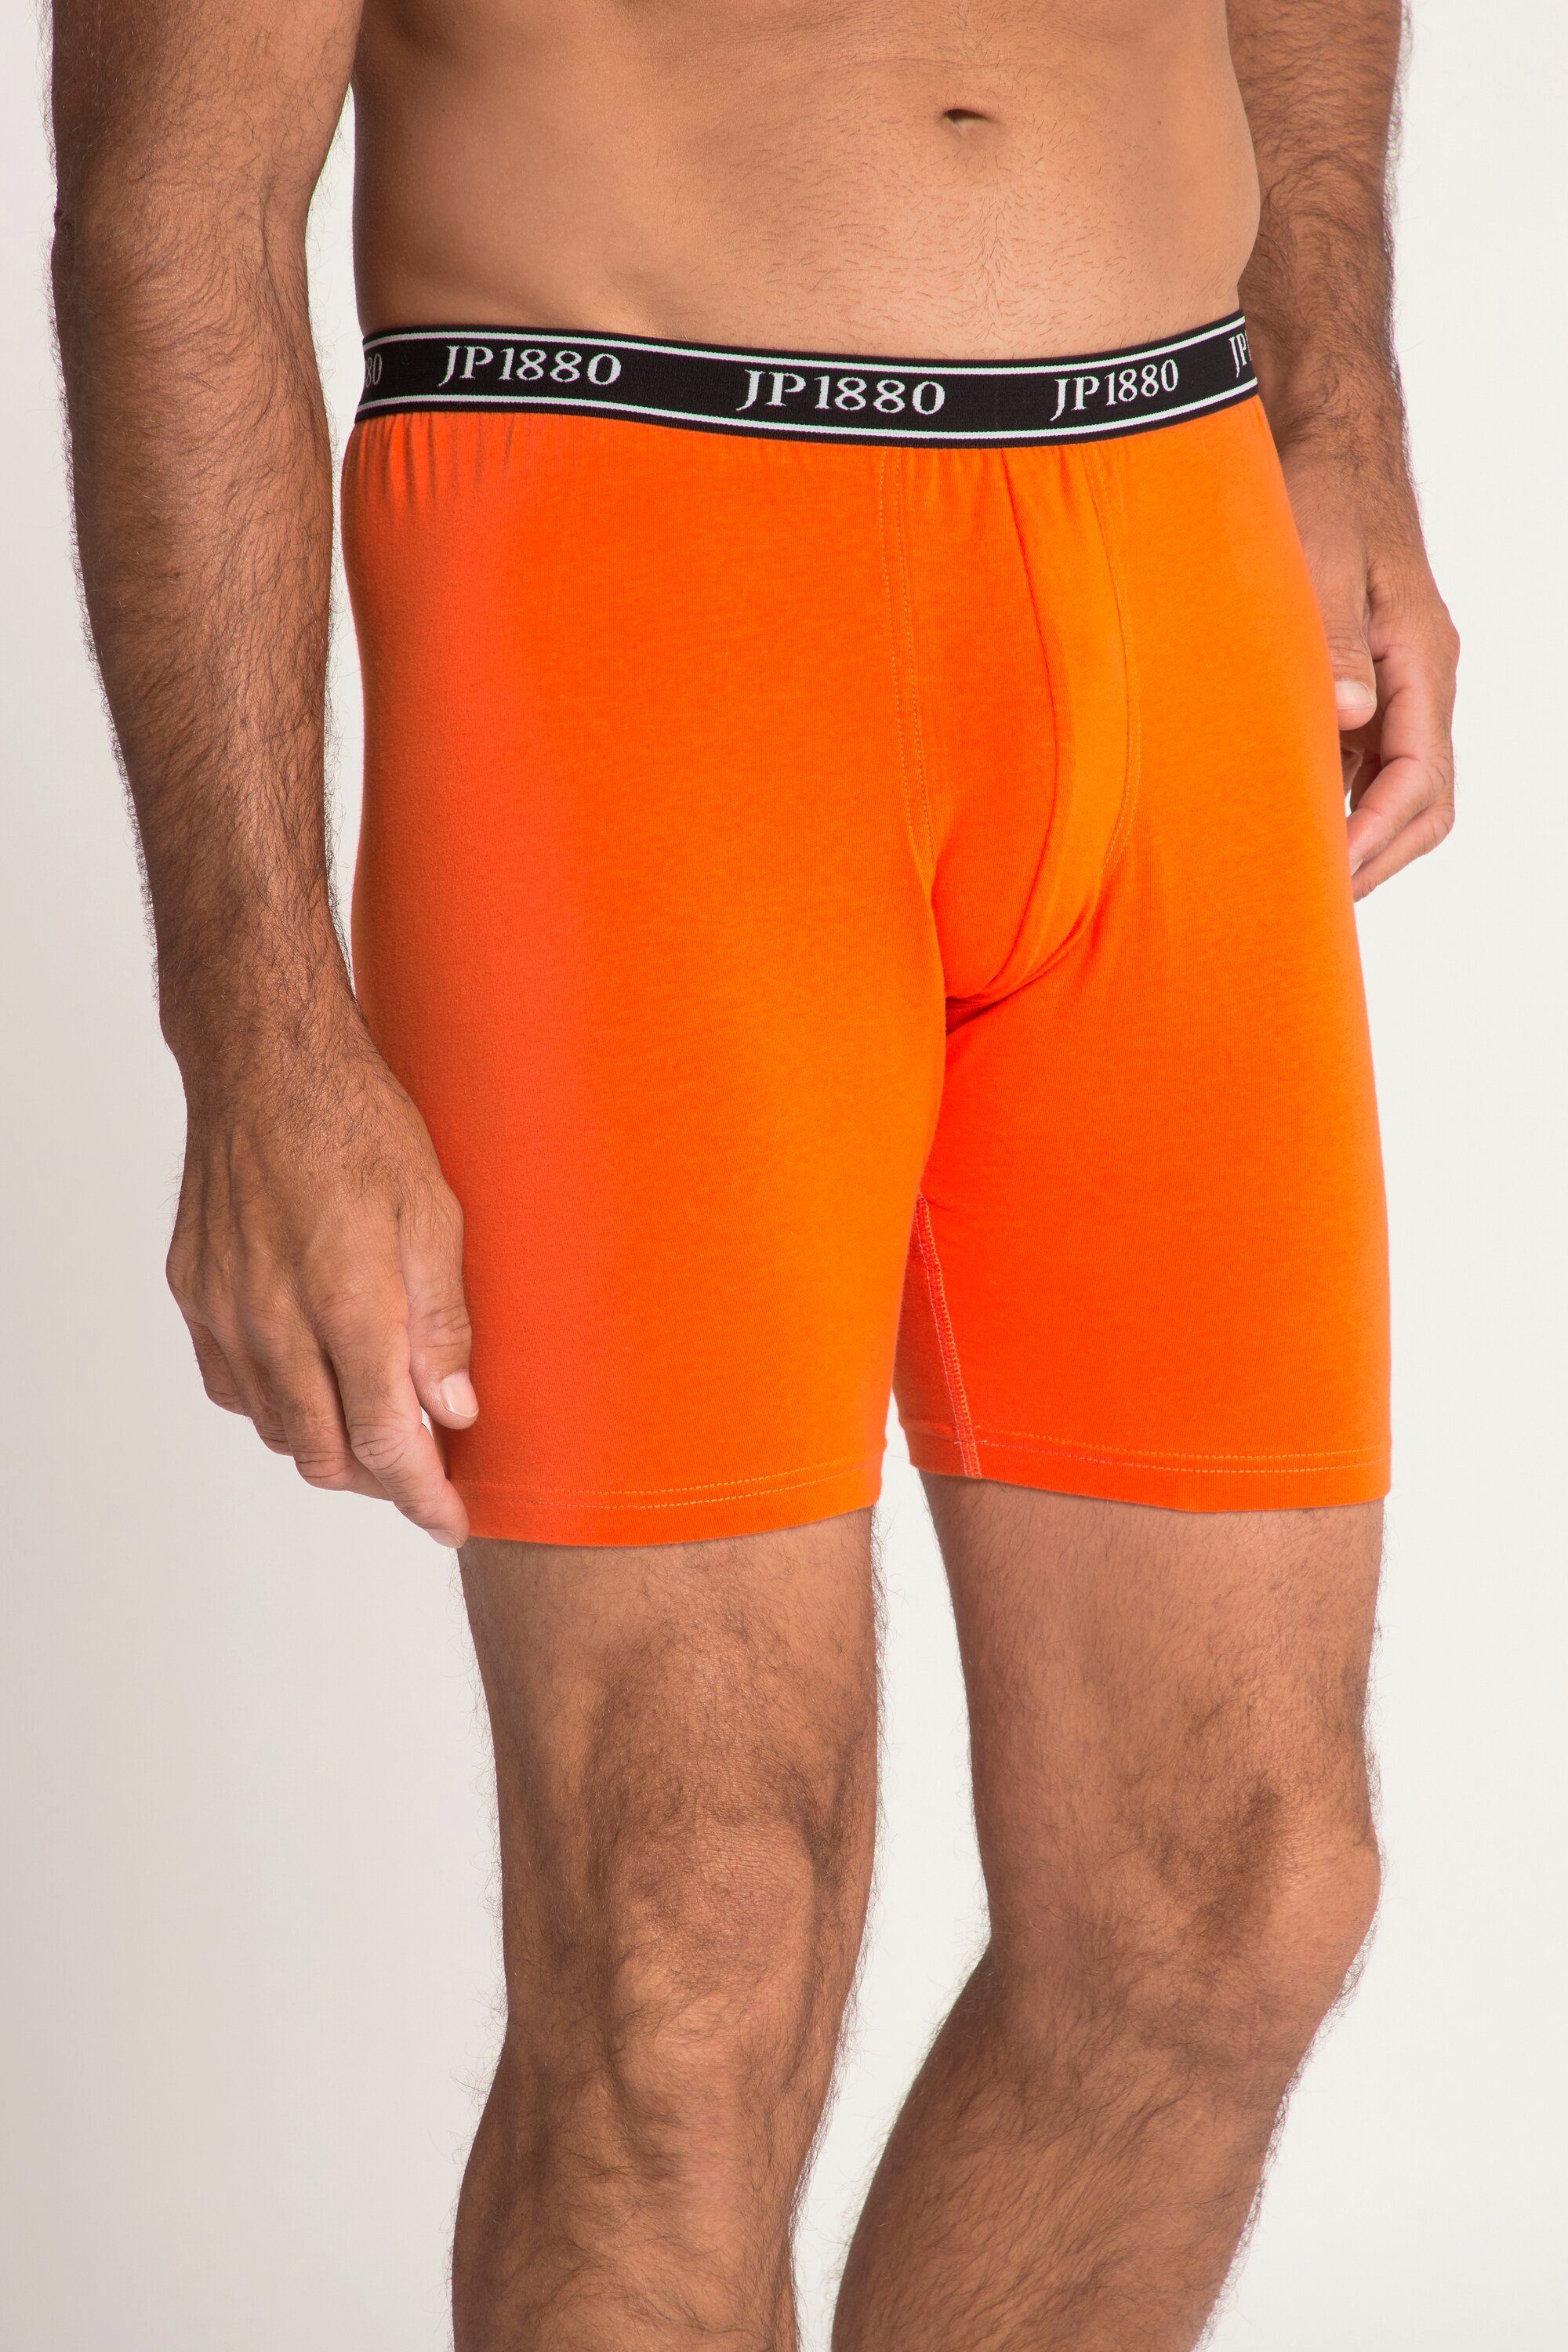 FLEXNAMIC® JP1880 Boxershorts Longpants Komfortbund Unterhose JP1880 orange